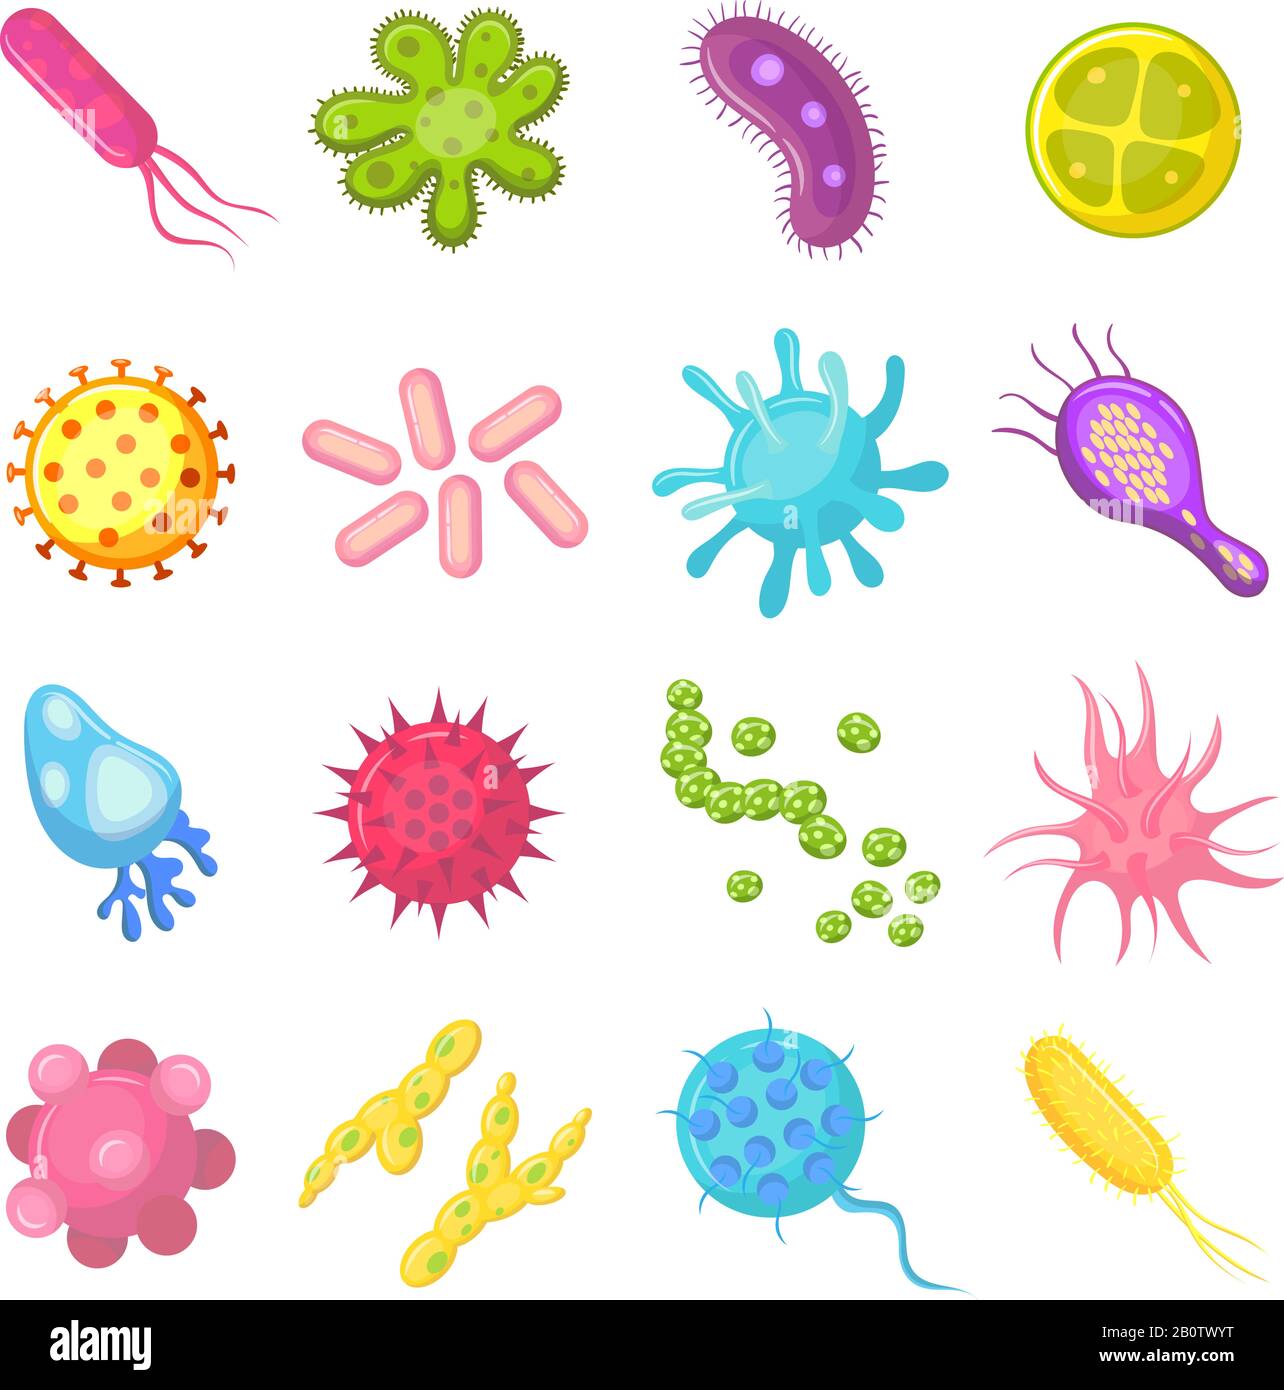 Batteri e germi colorati set microrganismi malattie-causando oggetti, batteri, virus, funghi. Illustrazione di cartoni animati isolati da vettori Illustrazione Vettoriale